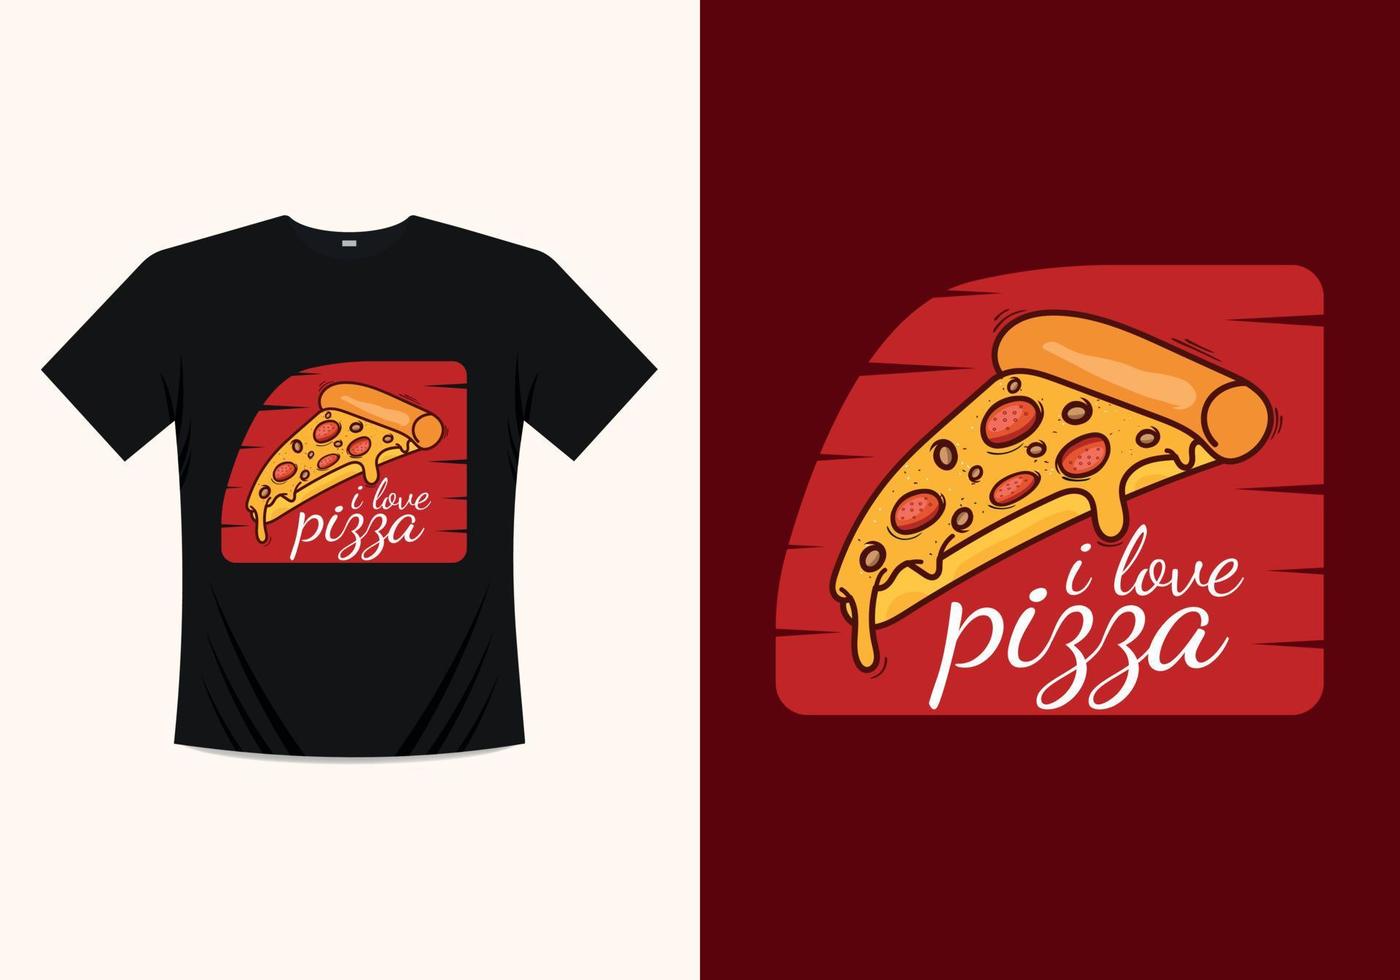 design moderno de modelo de impressão de camiseta de pizza. estilo de arte pop boxer de pizza dos desenhos animados. terror do cortador de pizza, adesivo, web, banner, cartão, pôster e papel de parede do telefone vetor